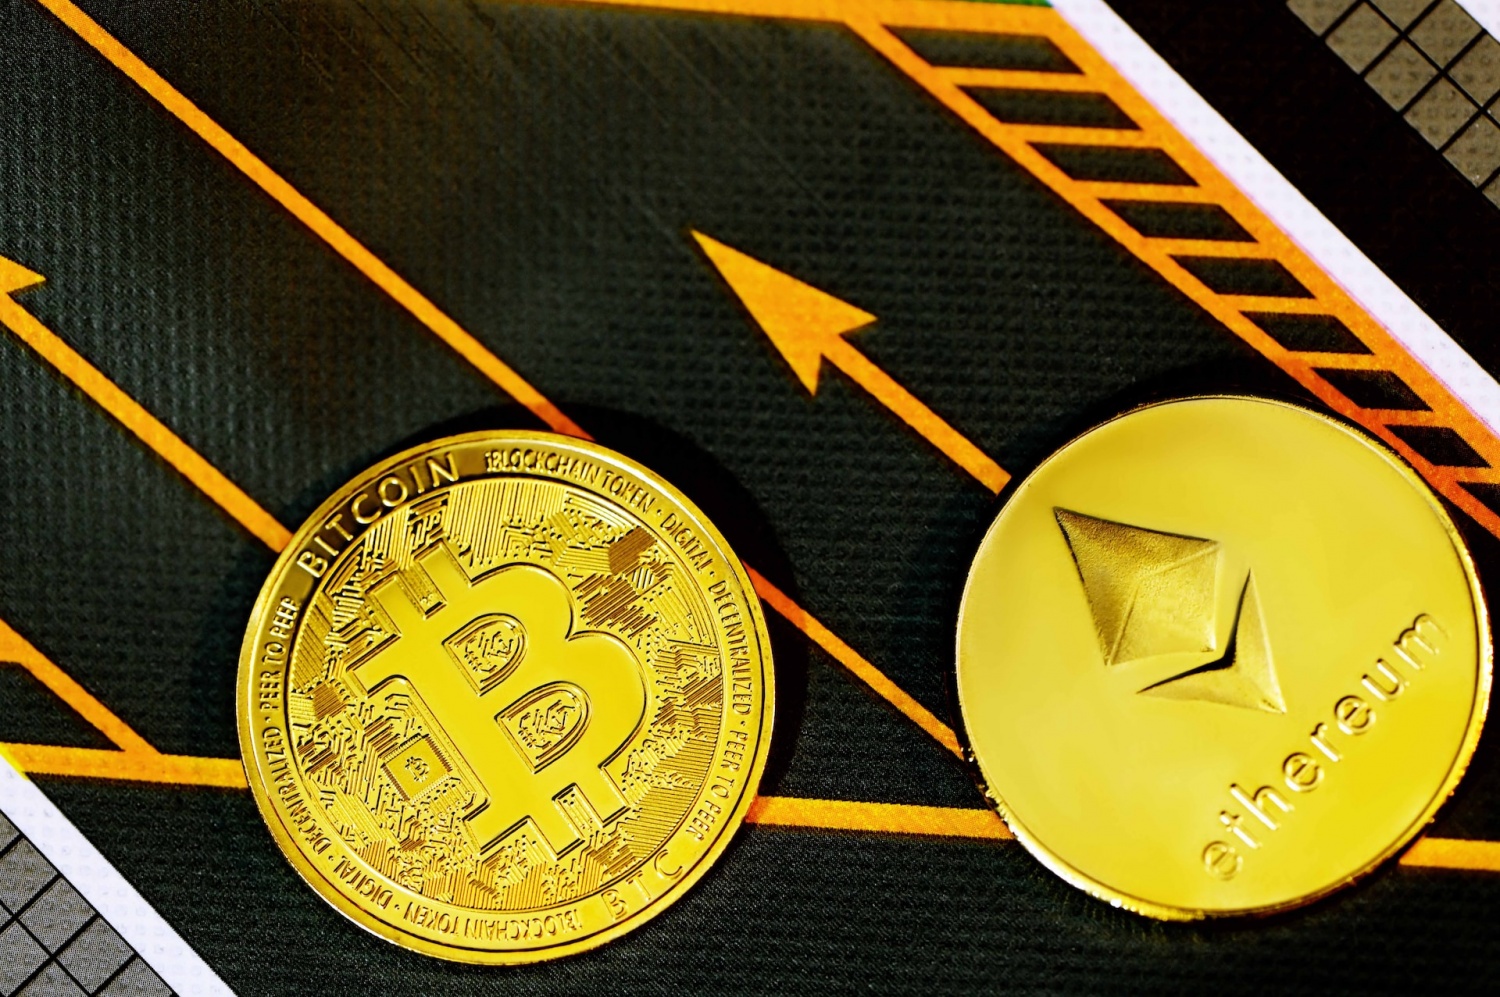 Bitcoin above an ethereum coin